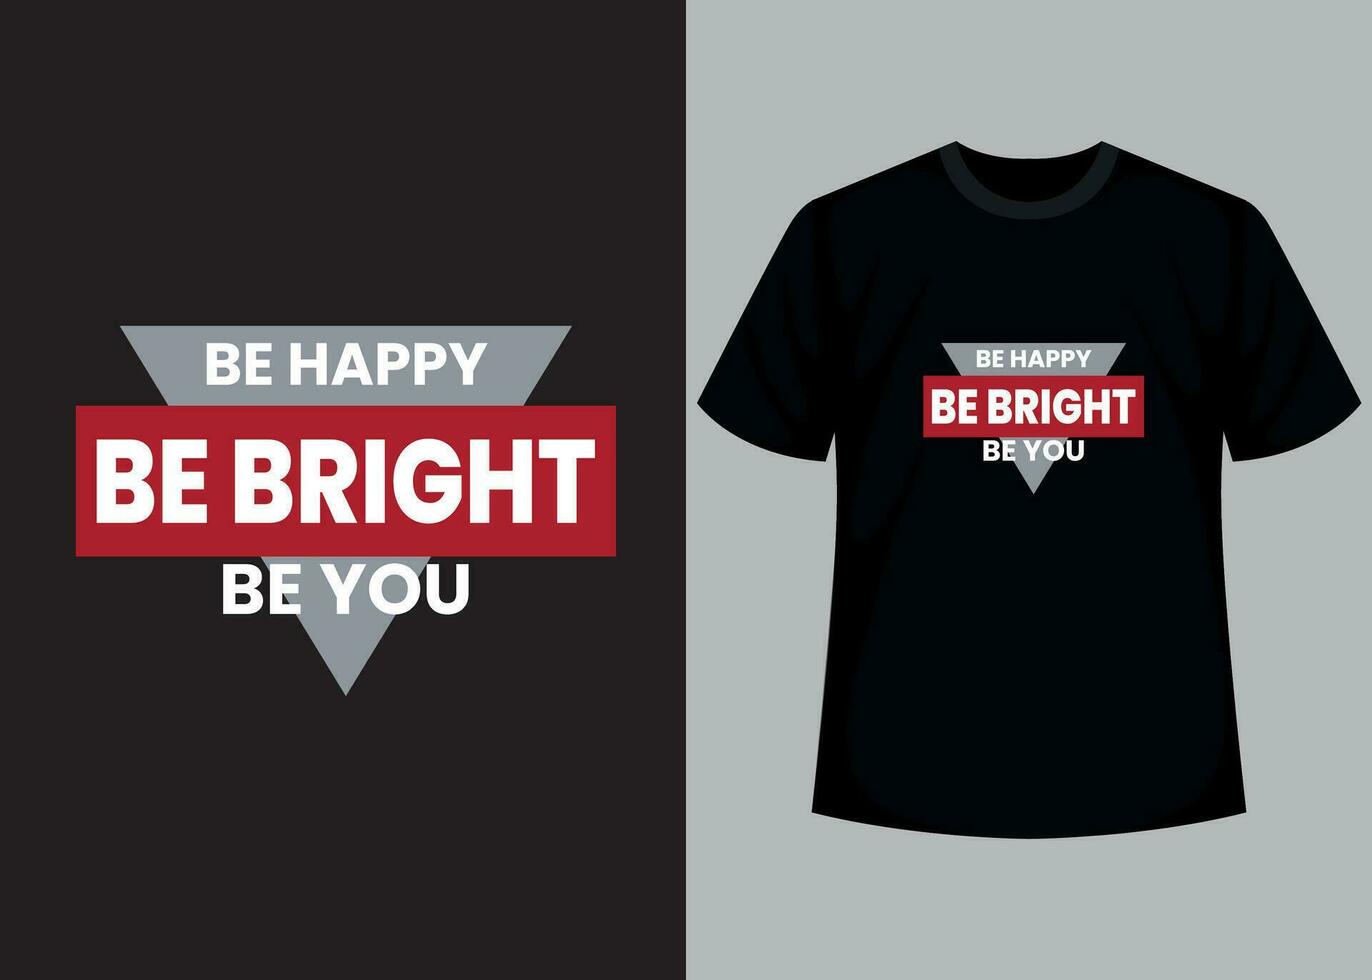 vara Lycklig, vara ljus, vara du t-shirt design. motiverande typografi t-shirt design, inspirera citat t-shirt design. vektor